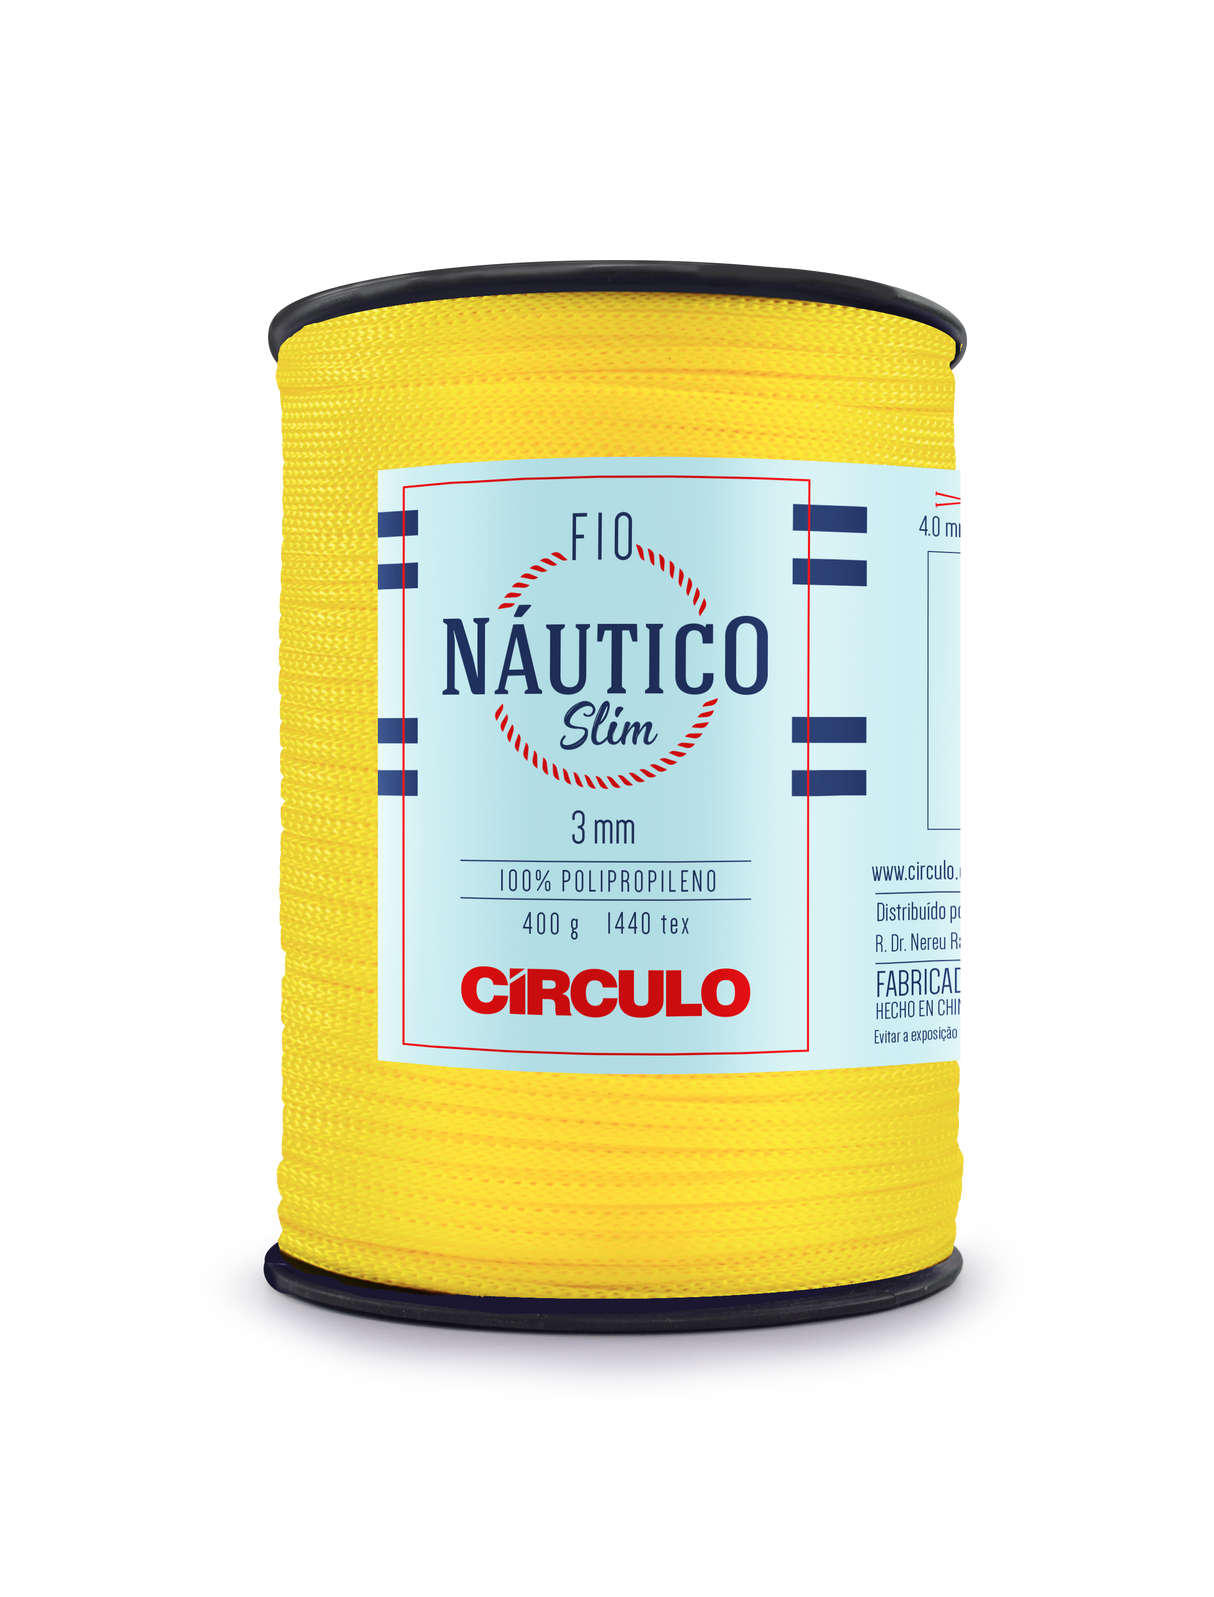 Circulo Fio Nautico Slim 3 mm color 1289